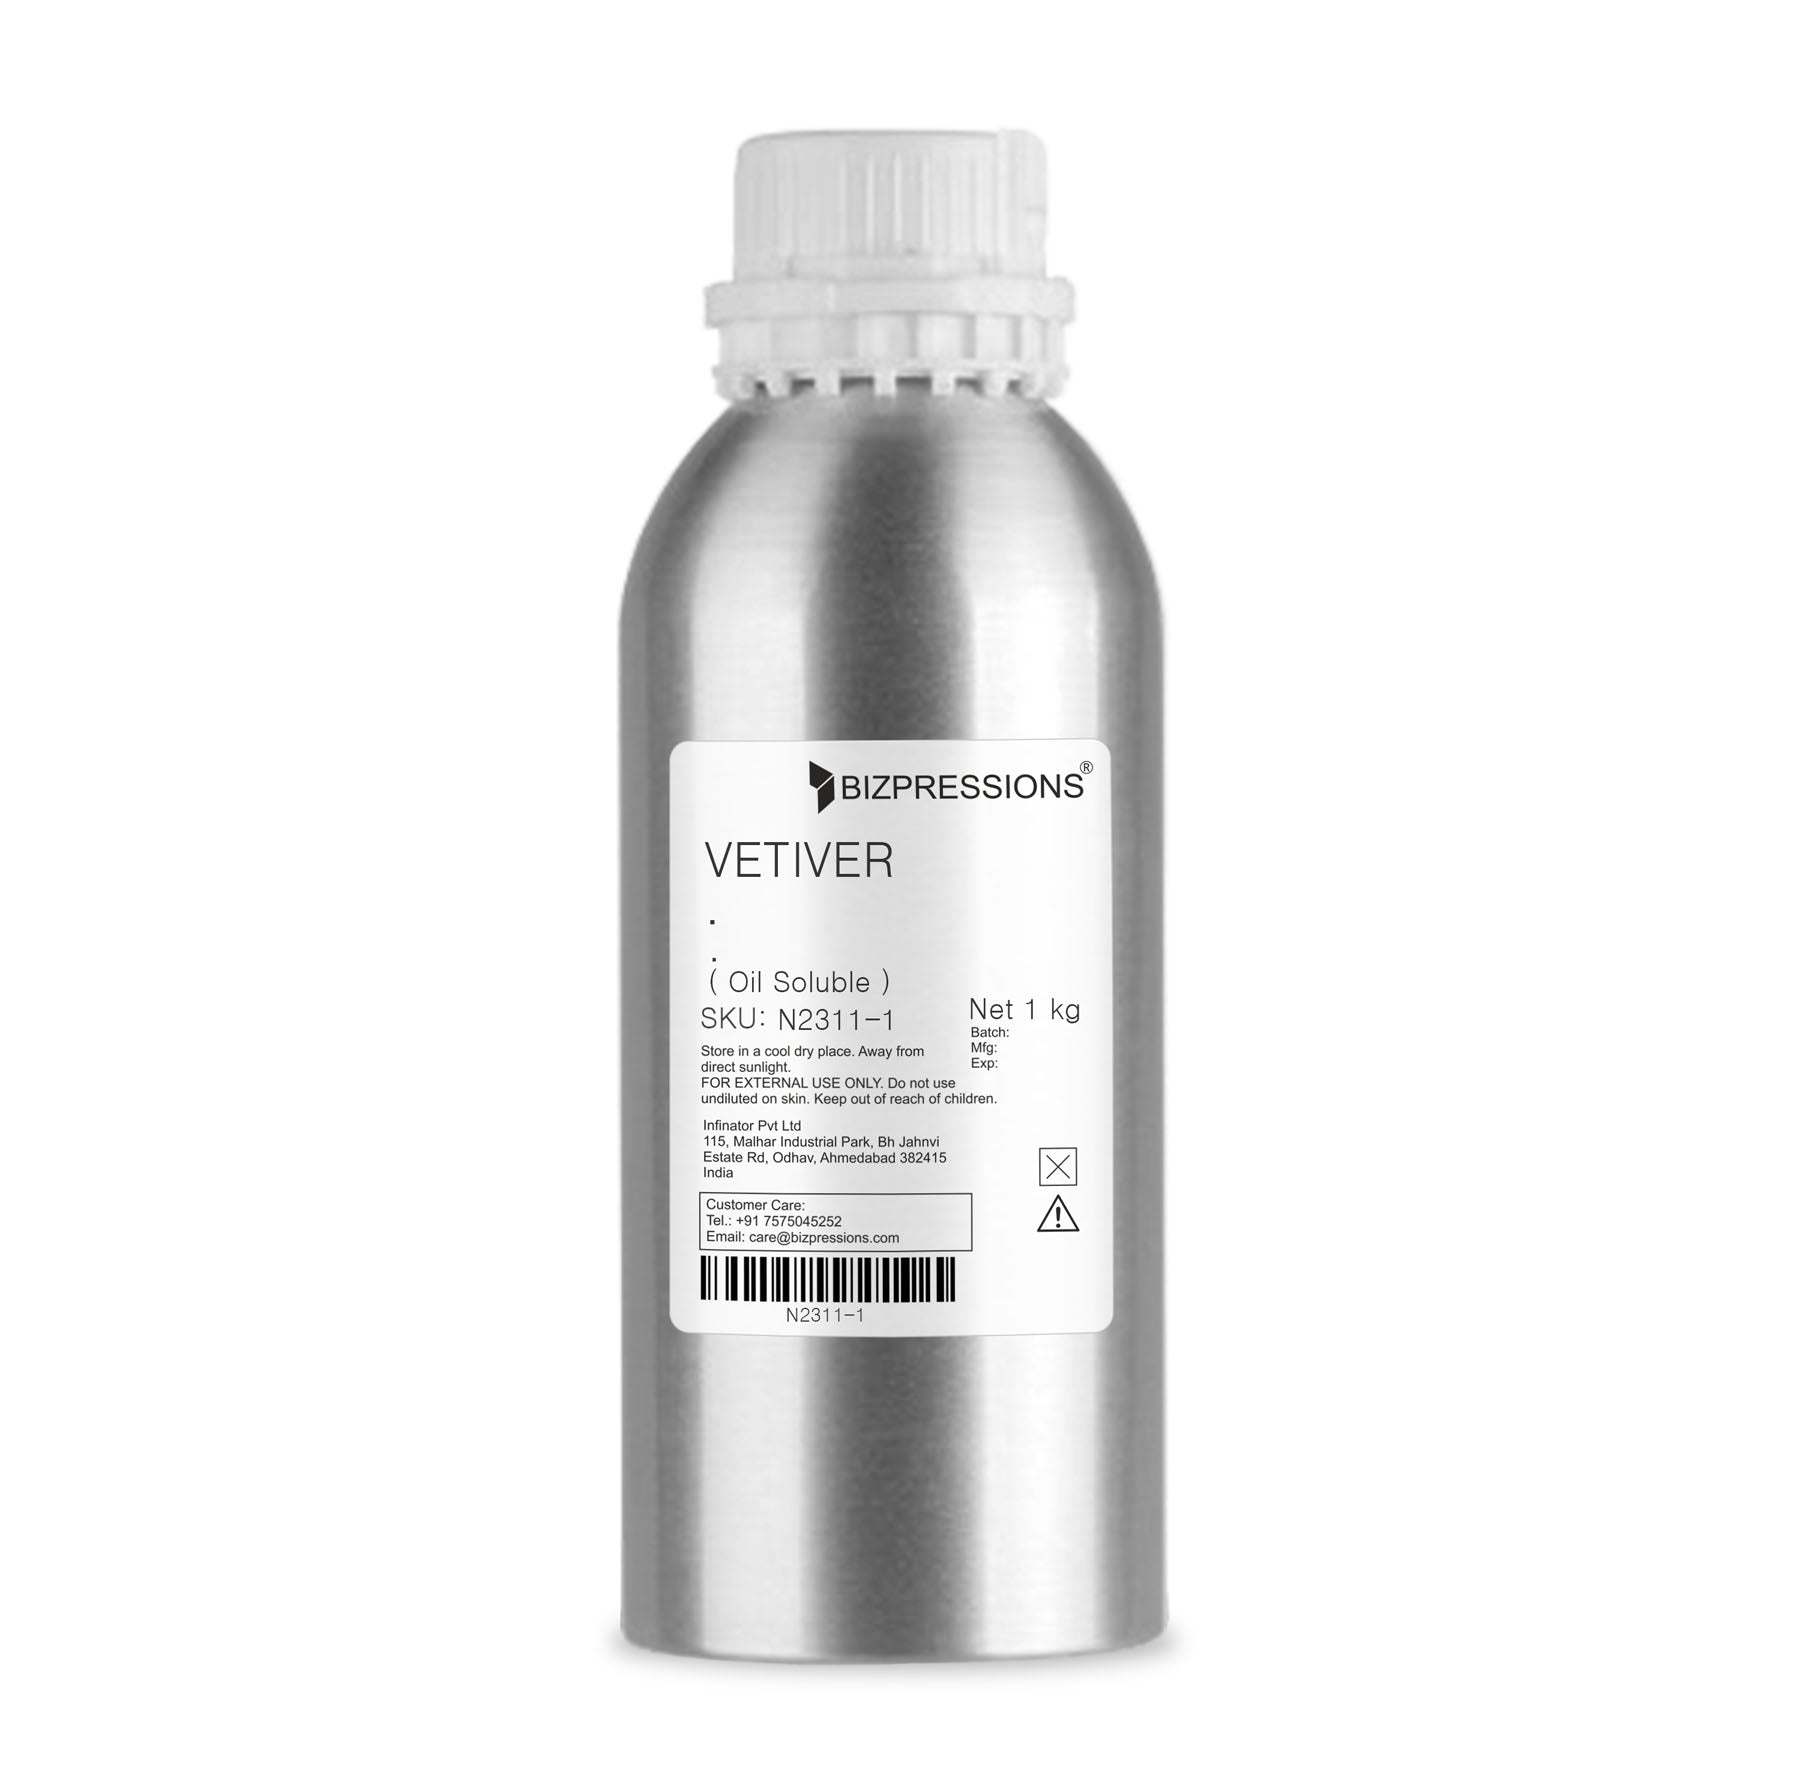 VETIVER - Fragrance ( Oil Soluble ) - 1 kg